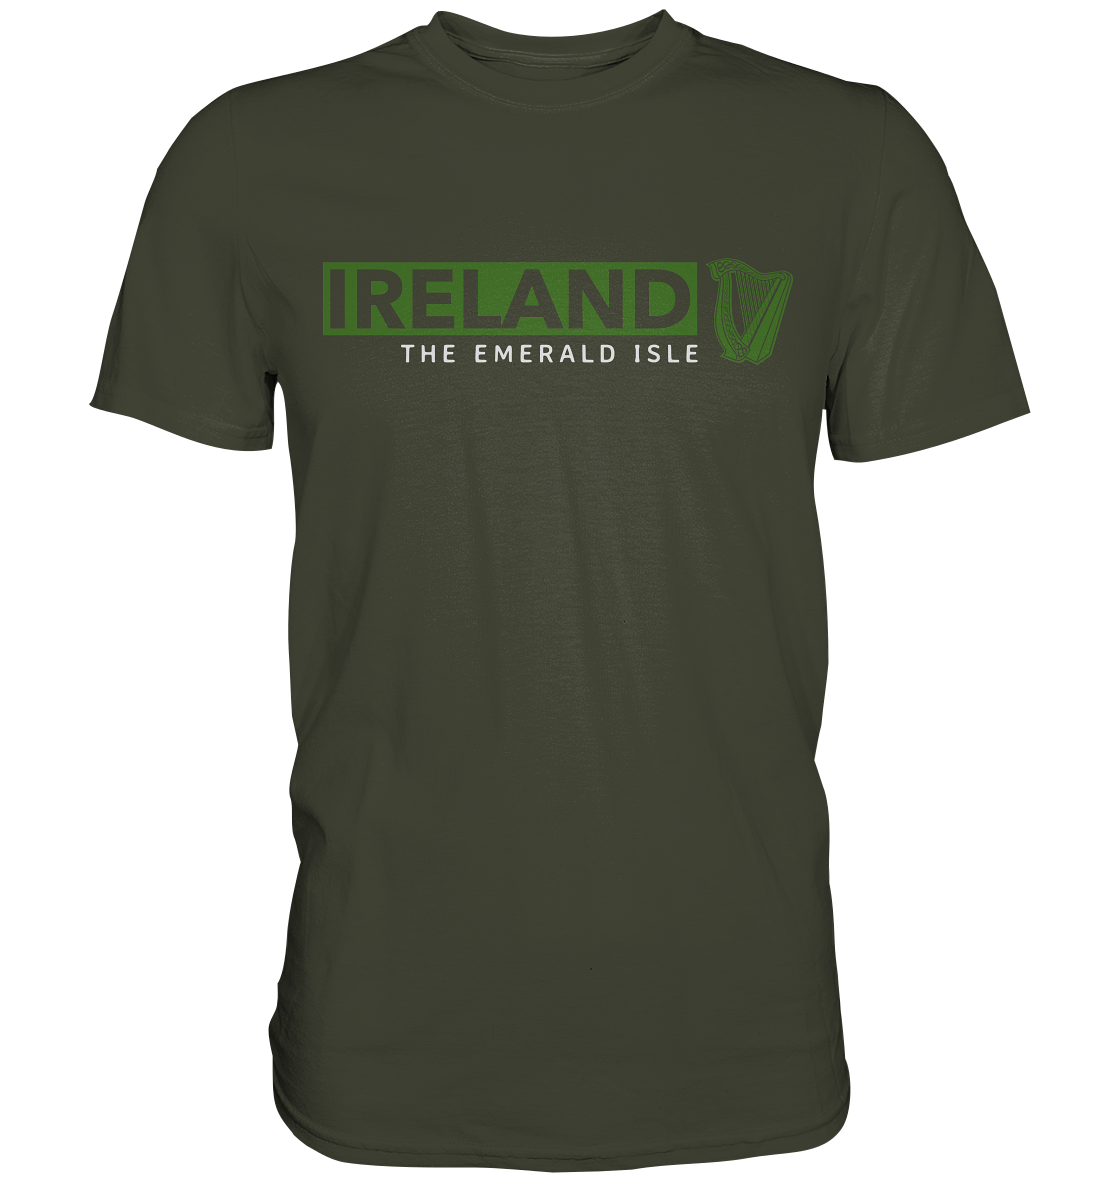 Ireland "The Emerald Isle / Harp" - Premium Shirt